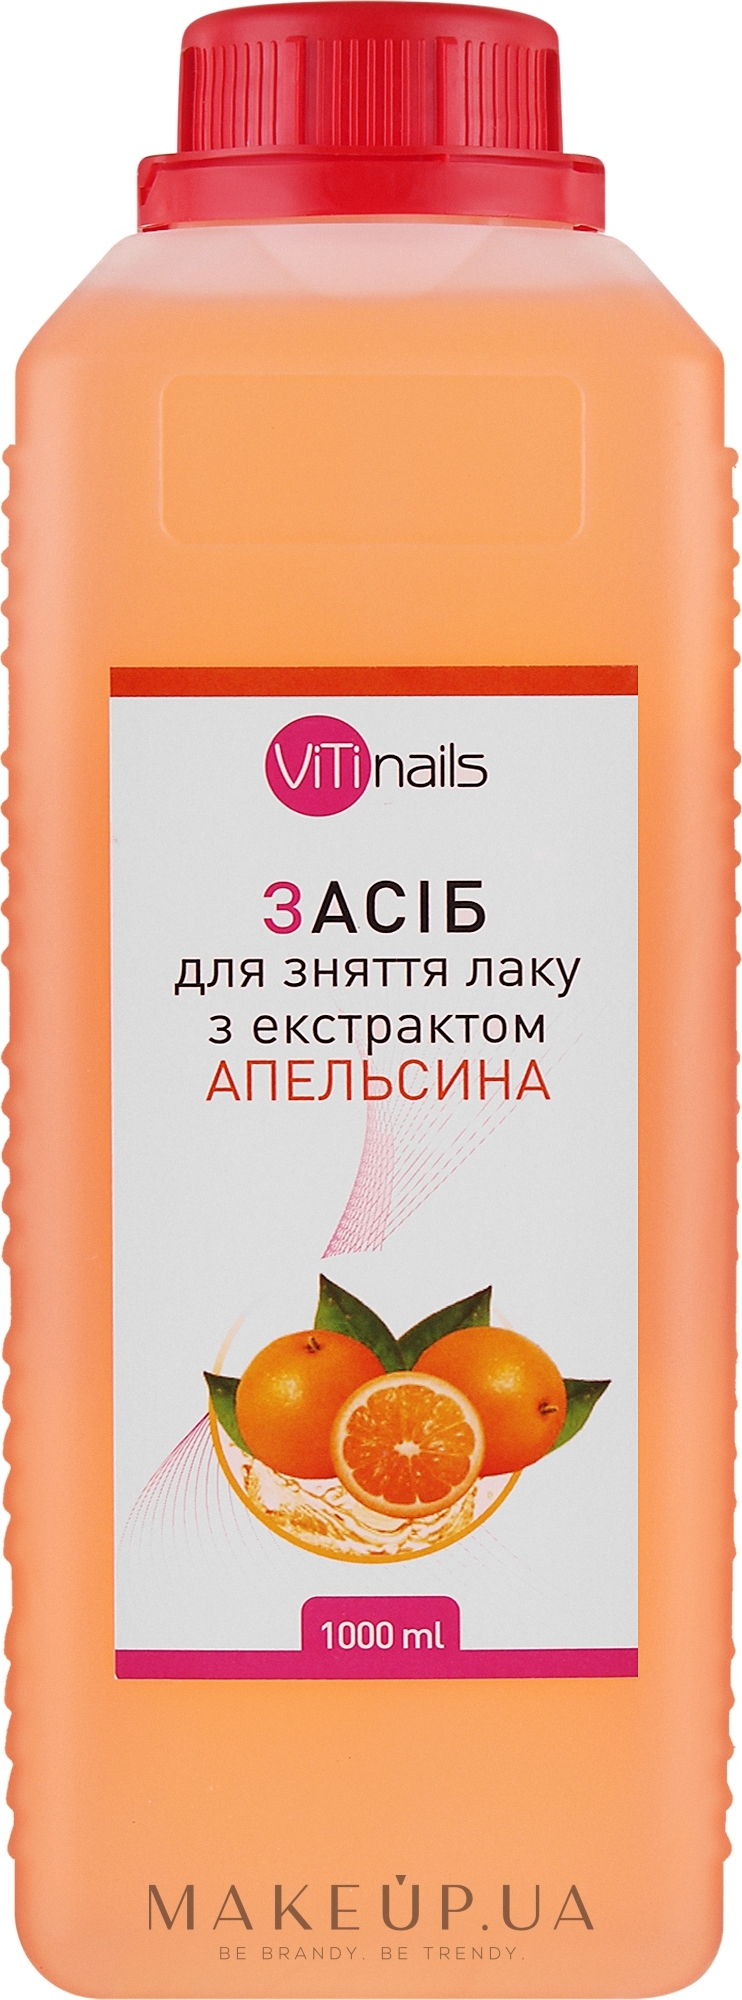 Жидкость для снятия лака с экстрактом апельсина, крышка с контролем вскрытия - ViTinails — фото 1000ml